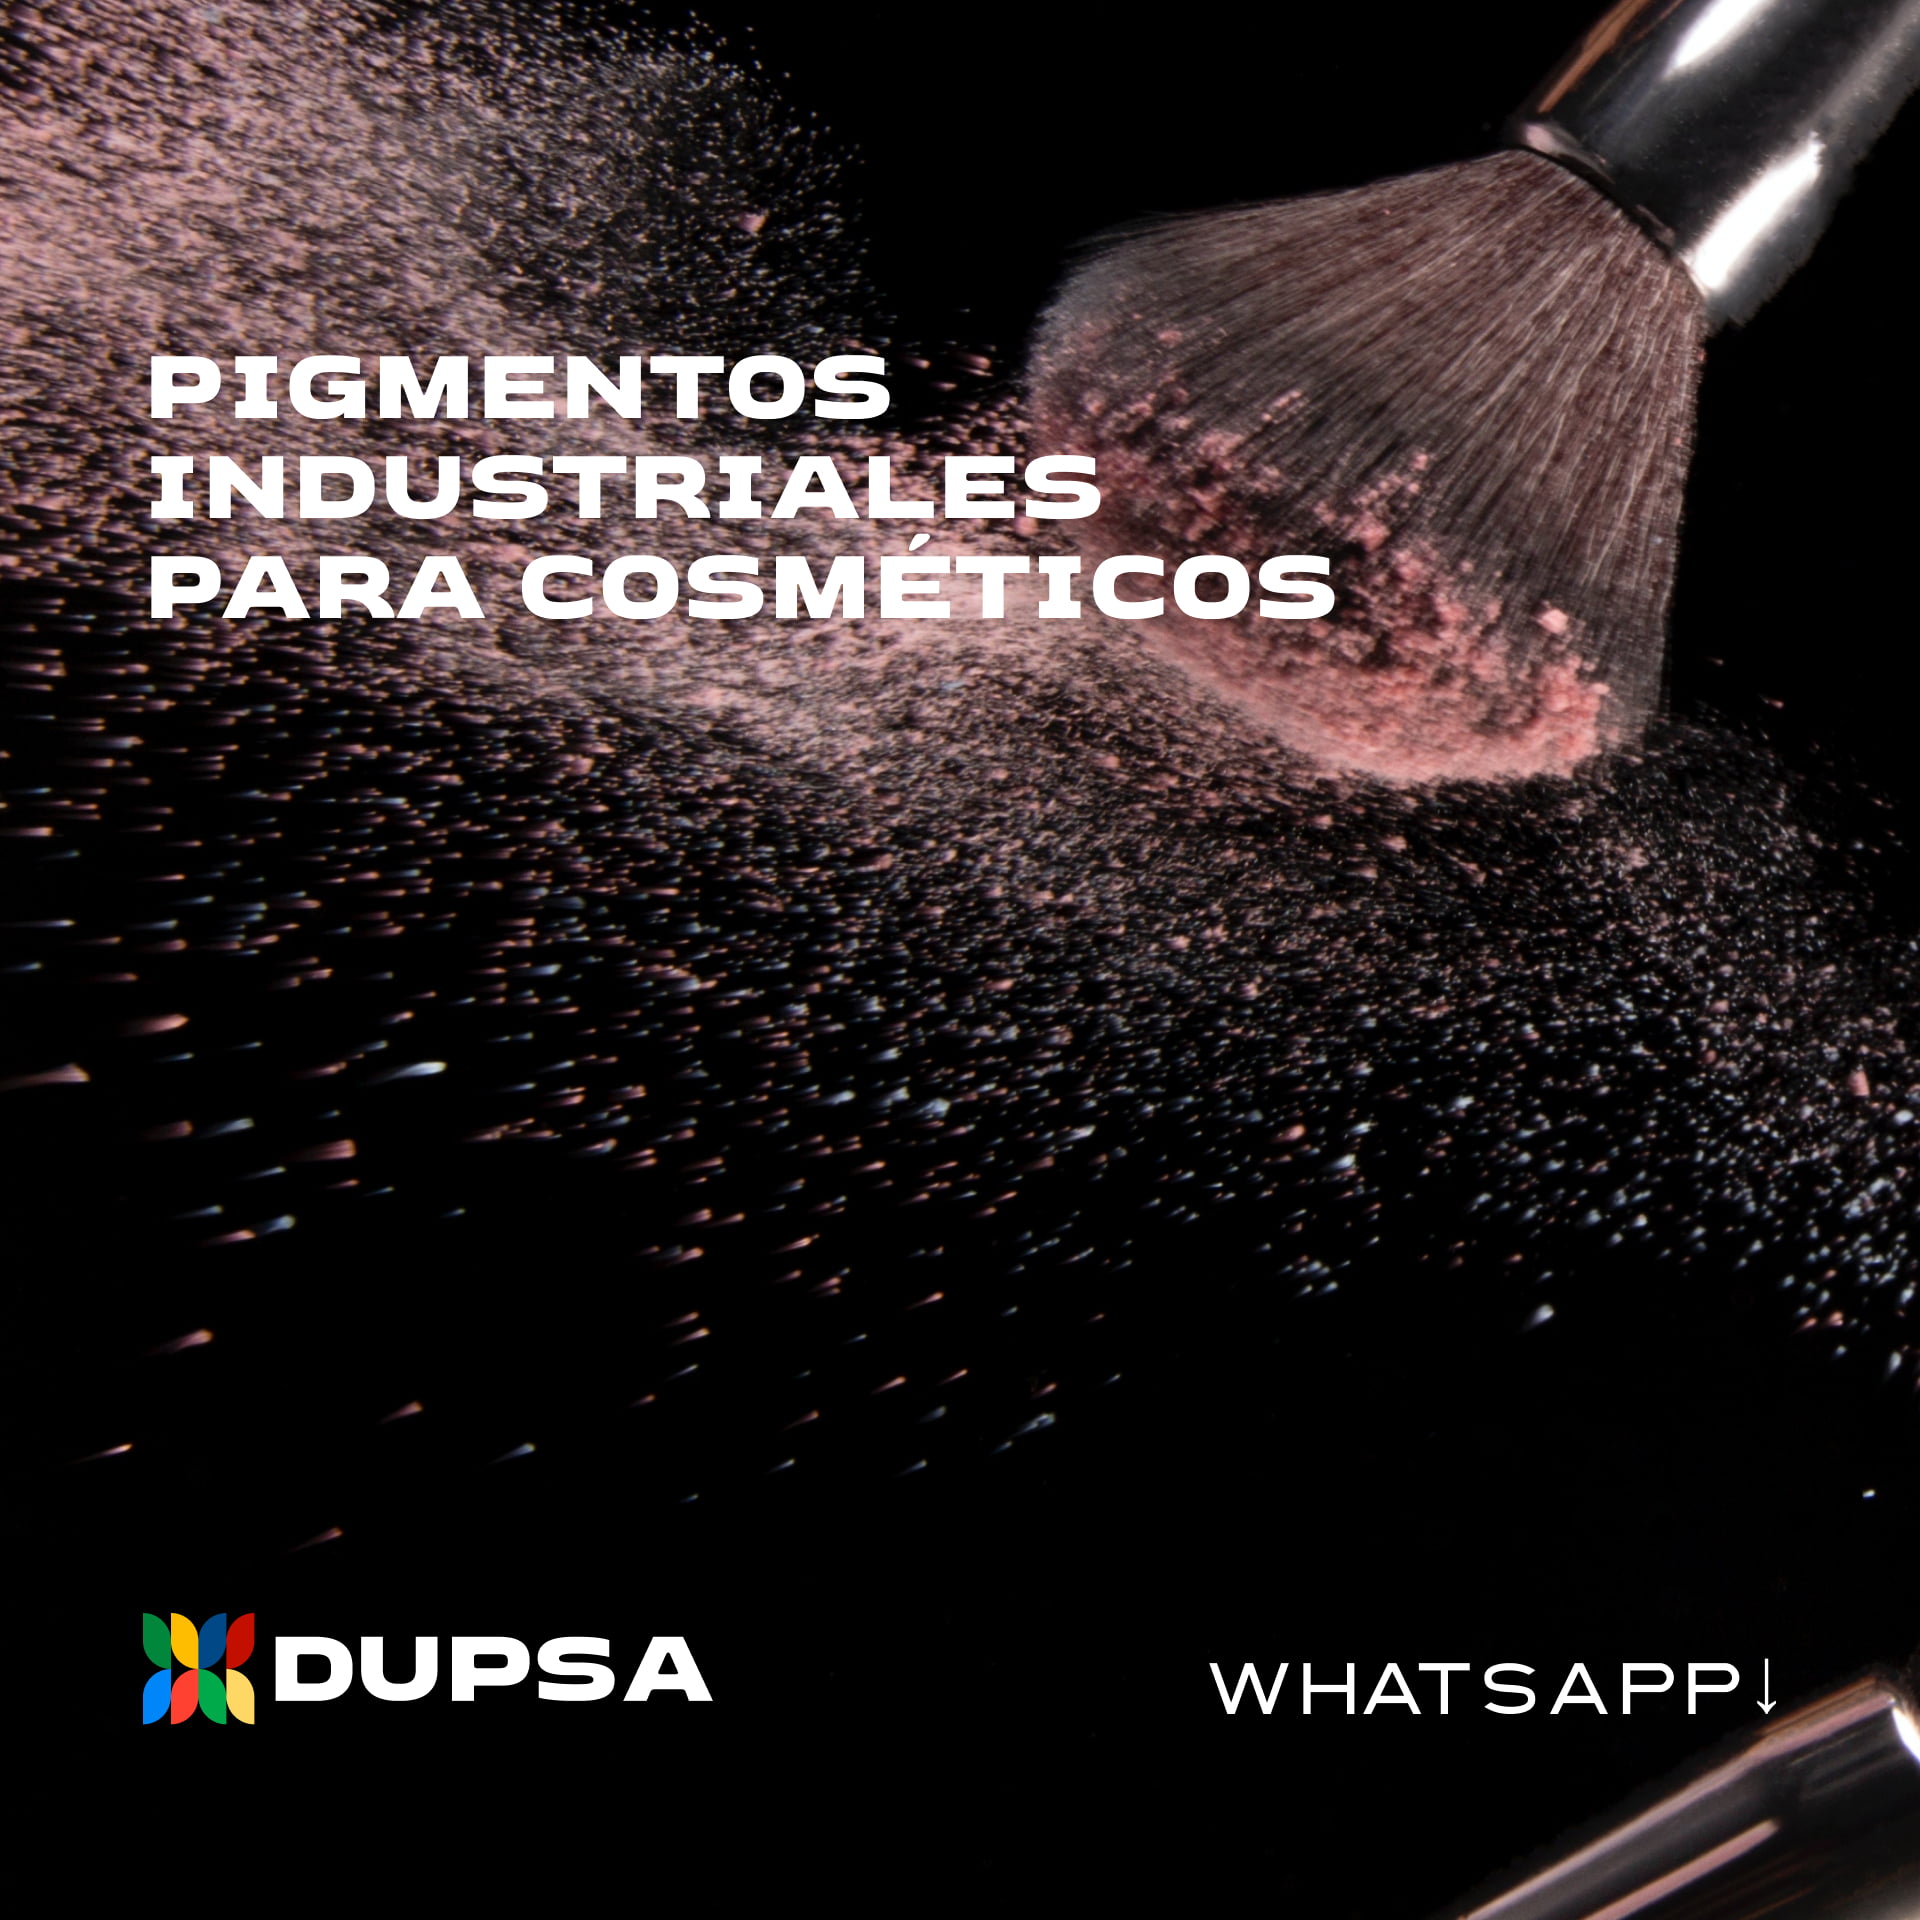 qd-ad-pigmentos-cosmeticos 4